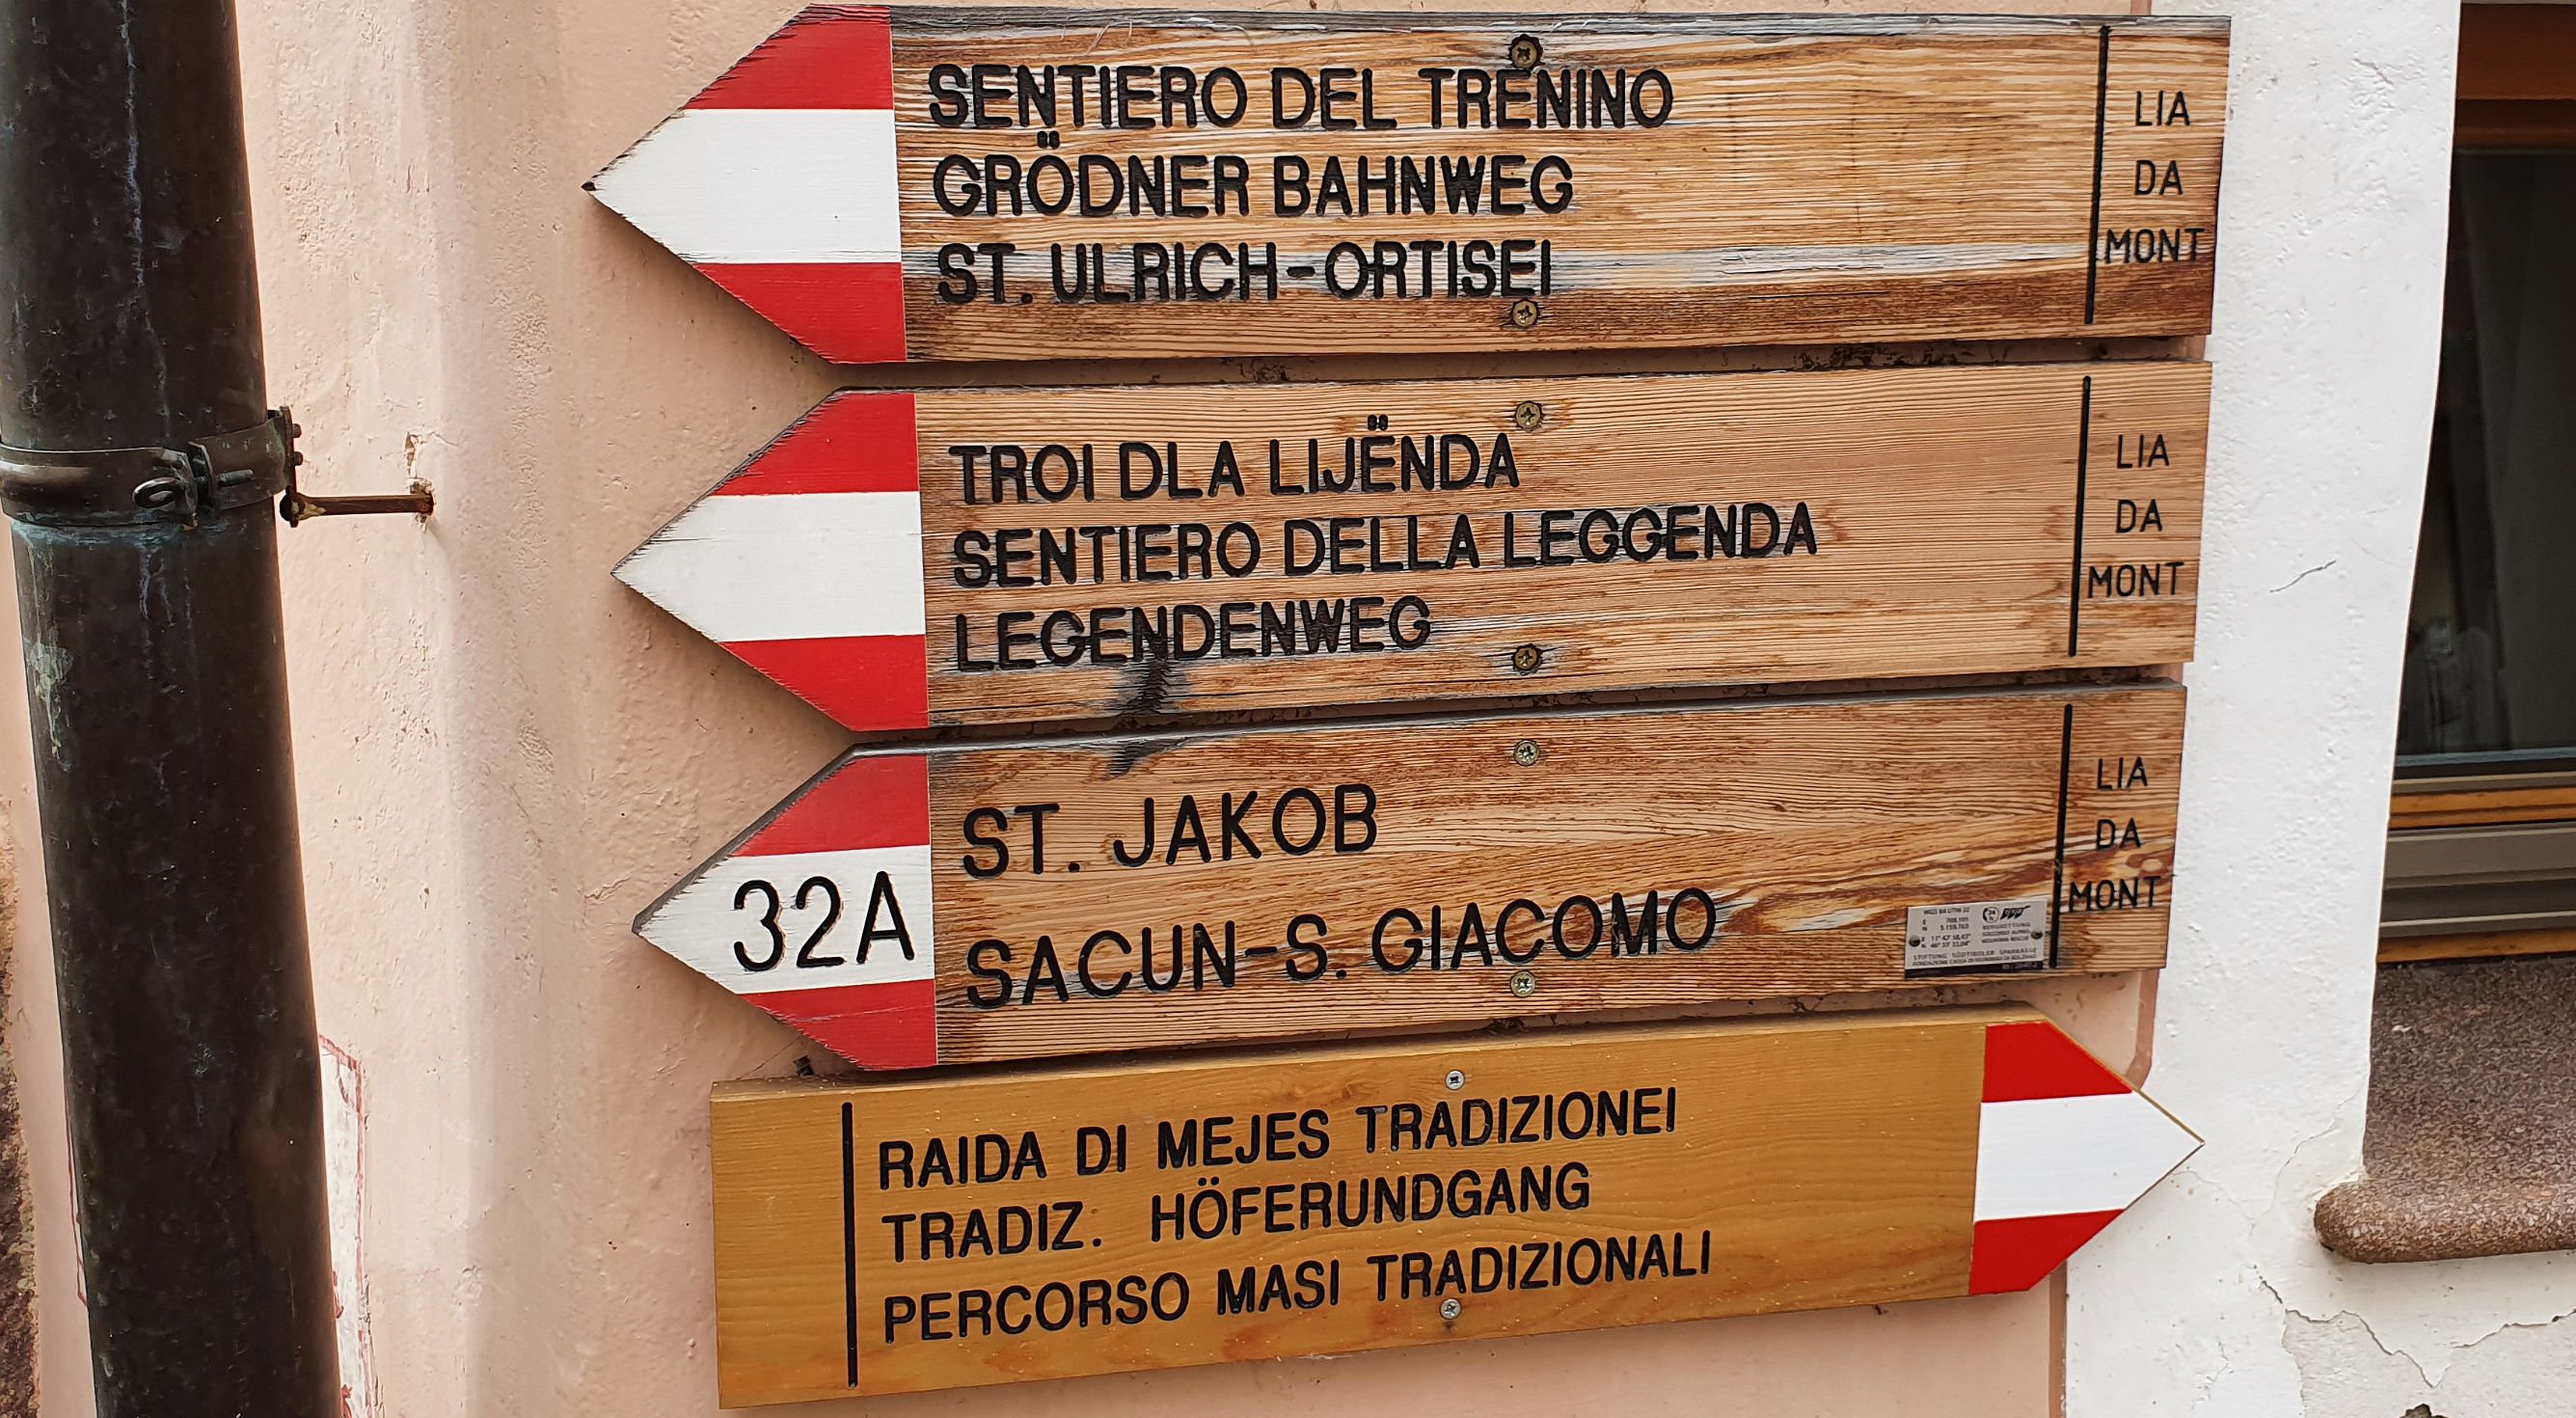 272-dag-10-wandelen-St-Jakob-02.jpg - Het Ladinisch stamt af van het ‘vulgair Latijn’. Nog zo’n 30 000 mensen in het grensgebied tussen de provincies Zuid-Tirol en Trentino spreken deze taal. Daarom dat hier alle bewegwijzeringen in drie talen zijn: Ladinisch, Duits en Italiaans.